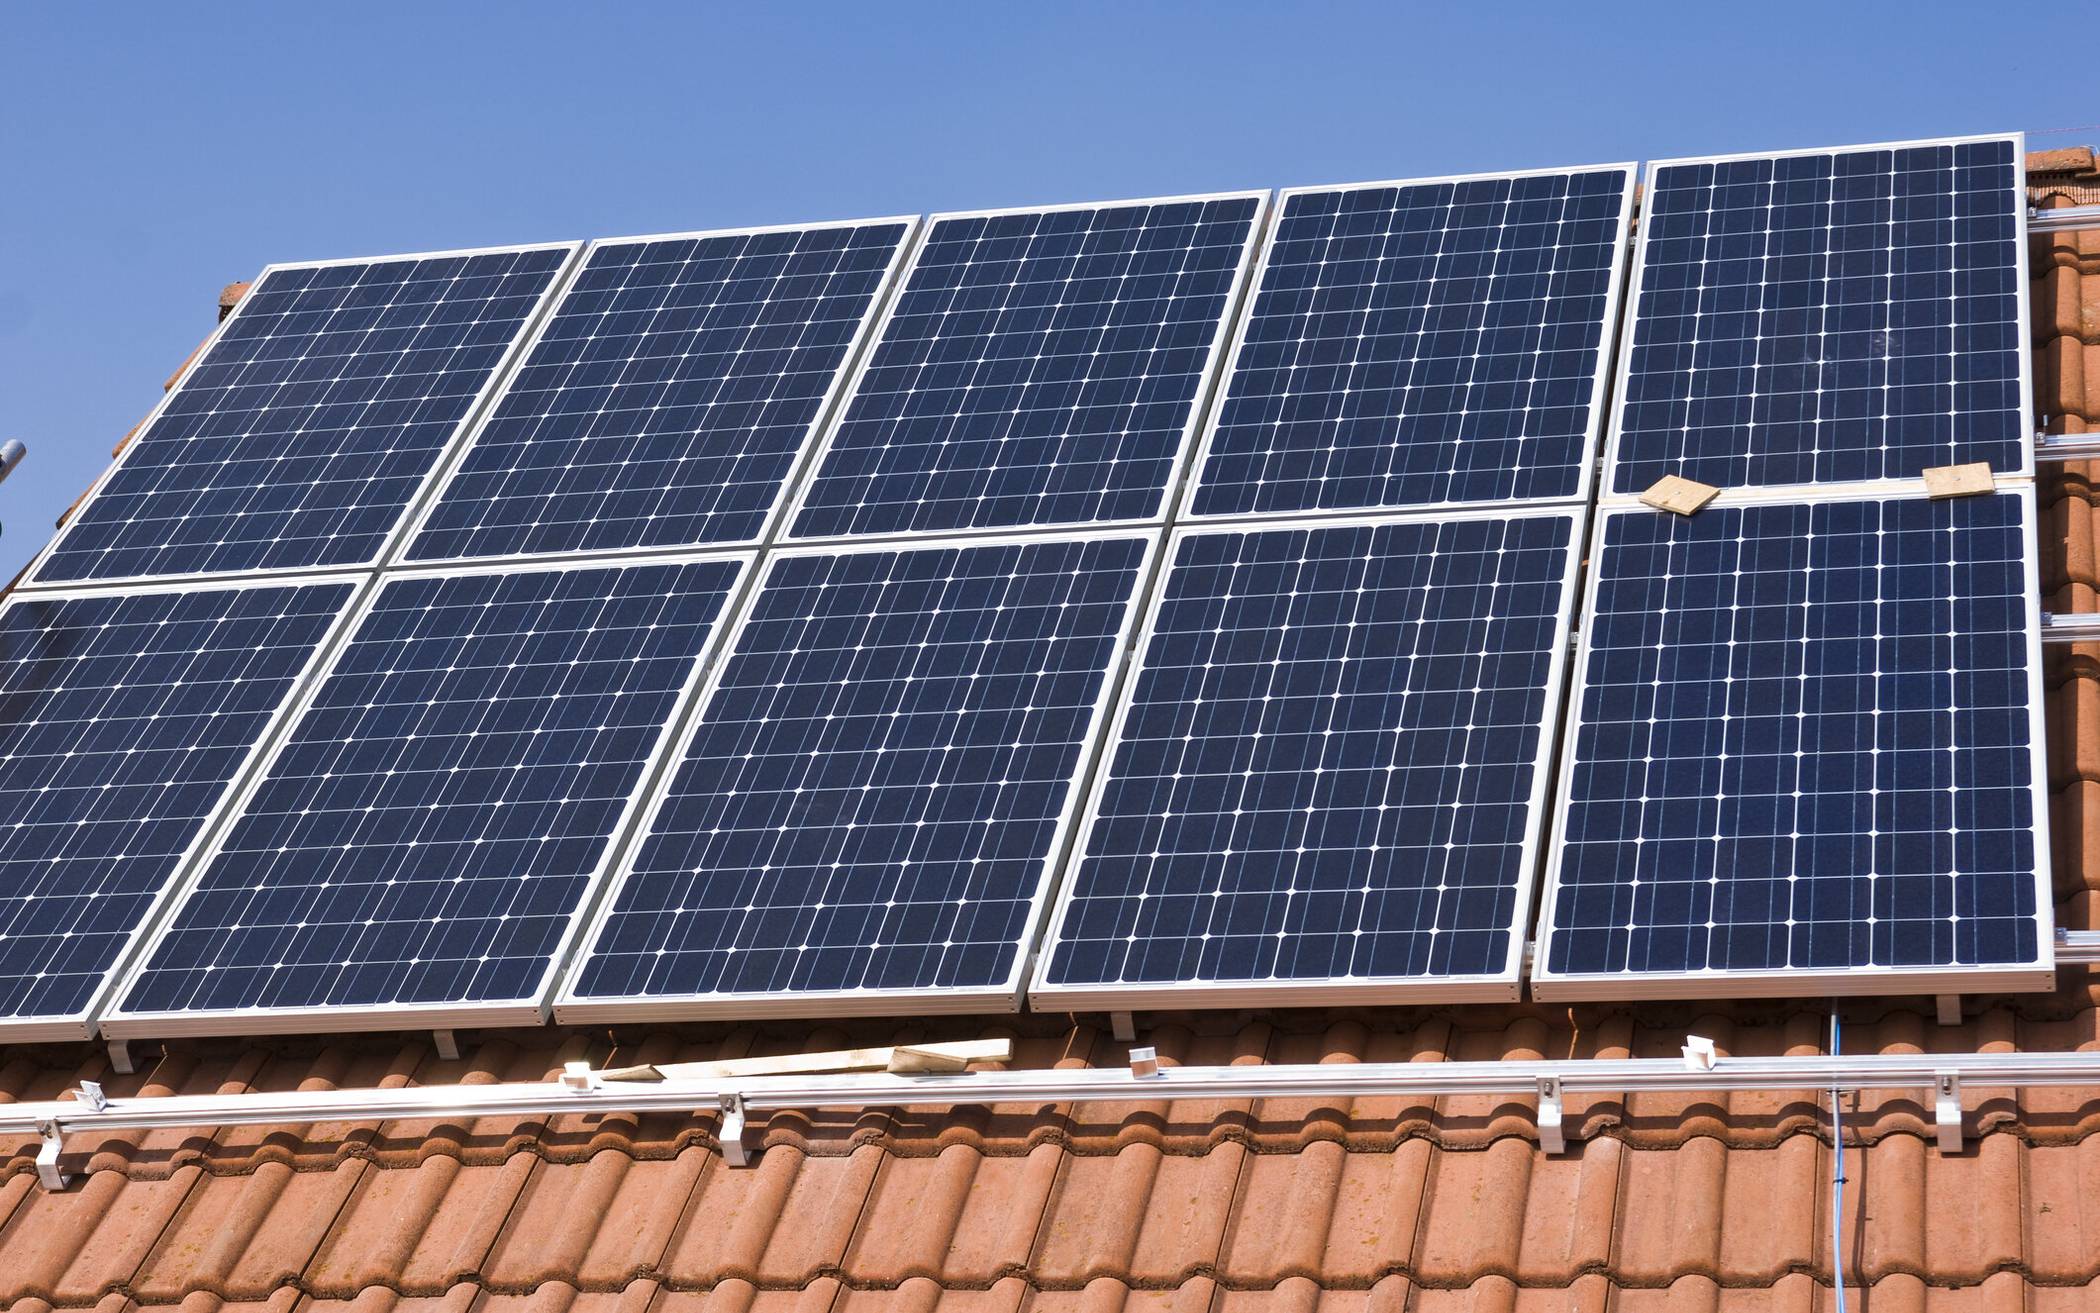  Photovoltaik-Anlagen auf dem eigenen Dach erfreuen sich zunehmender Beliebtheit. Ein Online-Vortrag im Rahmen der Allianz für Klima und Nachhaltigkeit informiert darüber. 